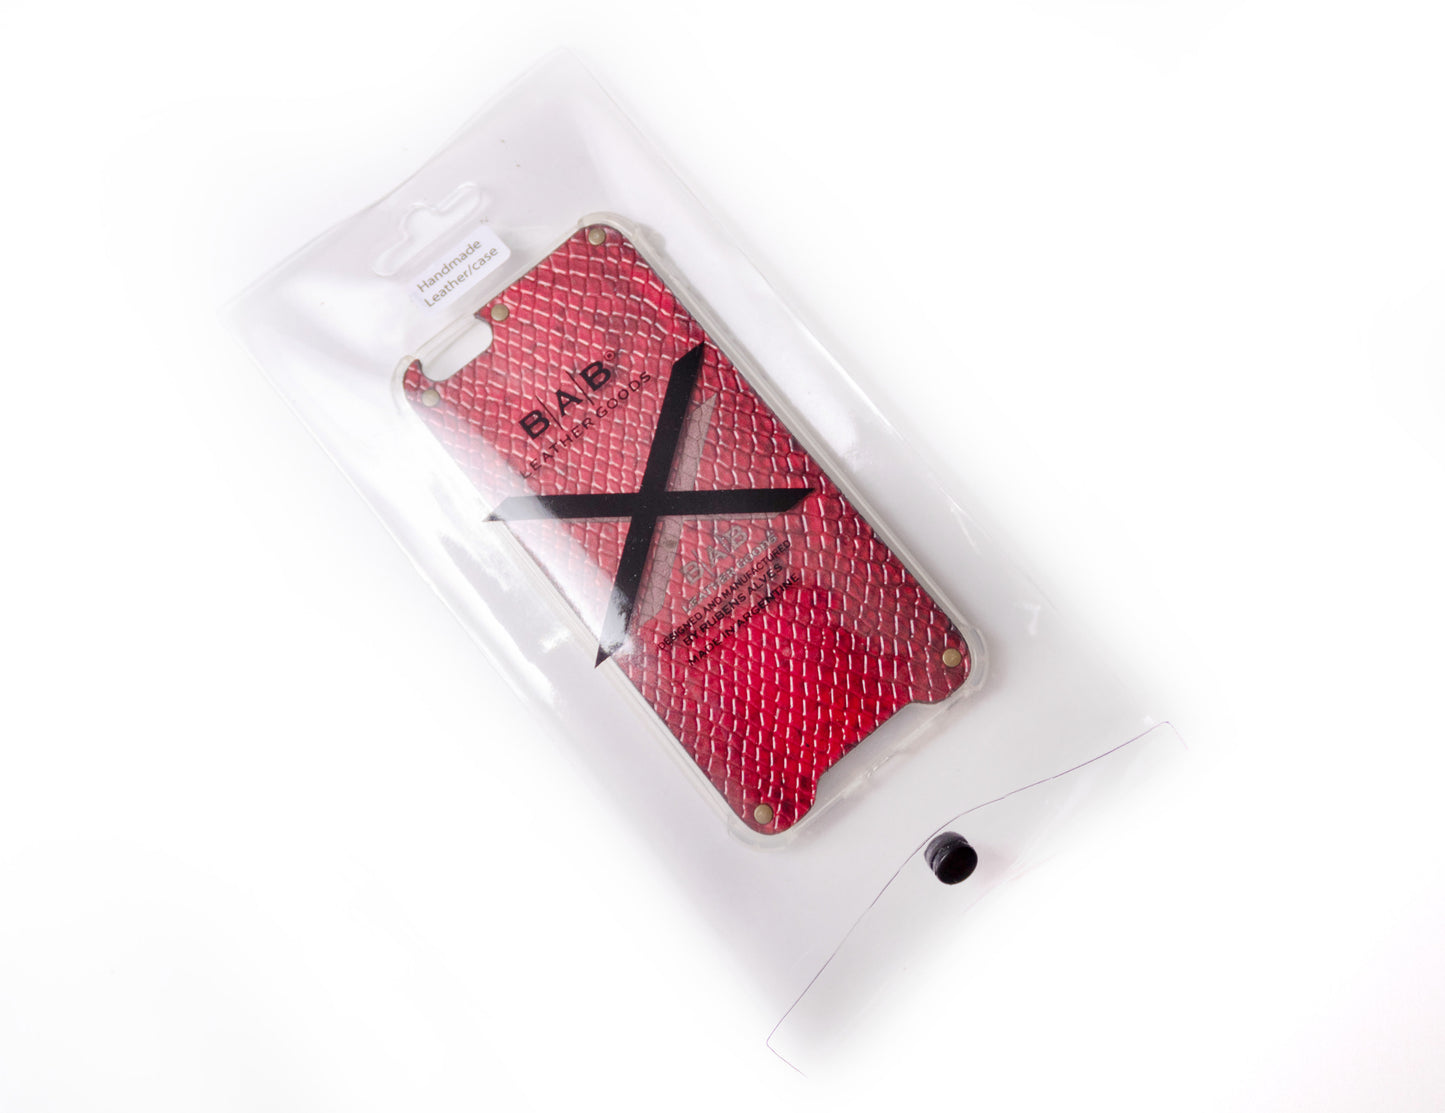 Γνήσια Δερμάτινη Θήκη iPhone με υφή, πατέντα Red Python, κομμένη και χαραγμένη με λέιζερ, 5 Xάλκινα Πριτσίνια.- F36